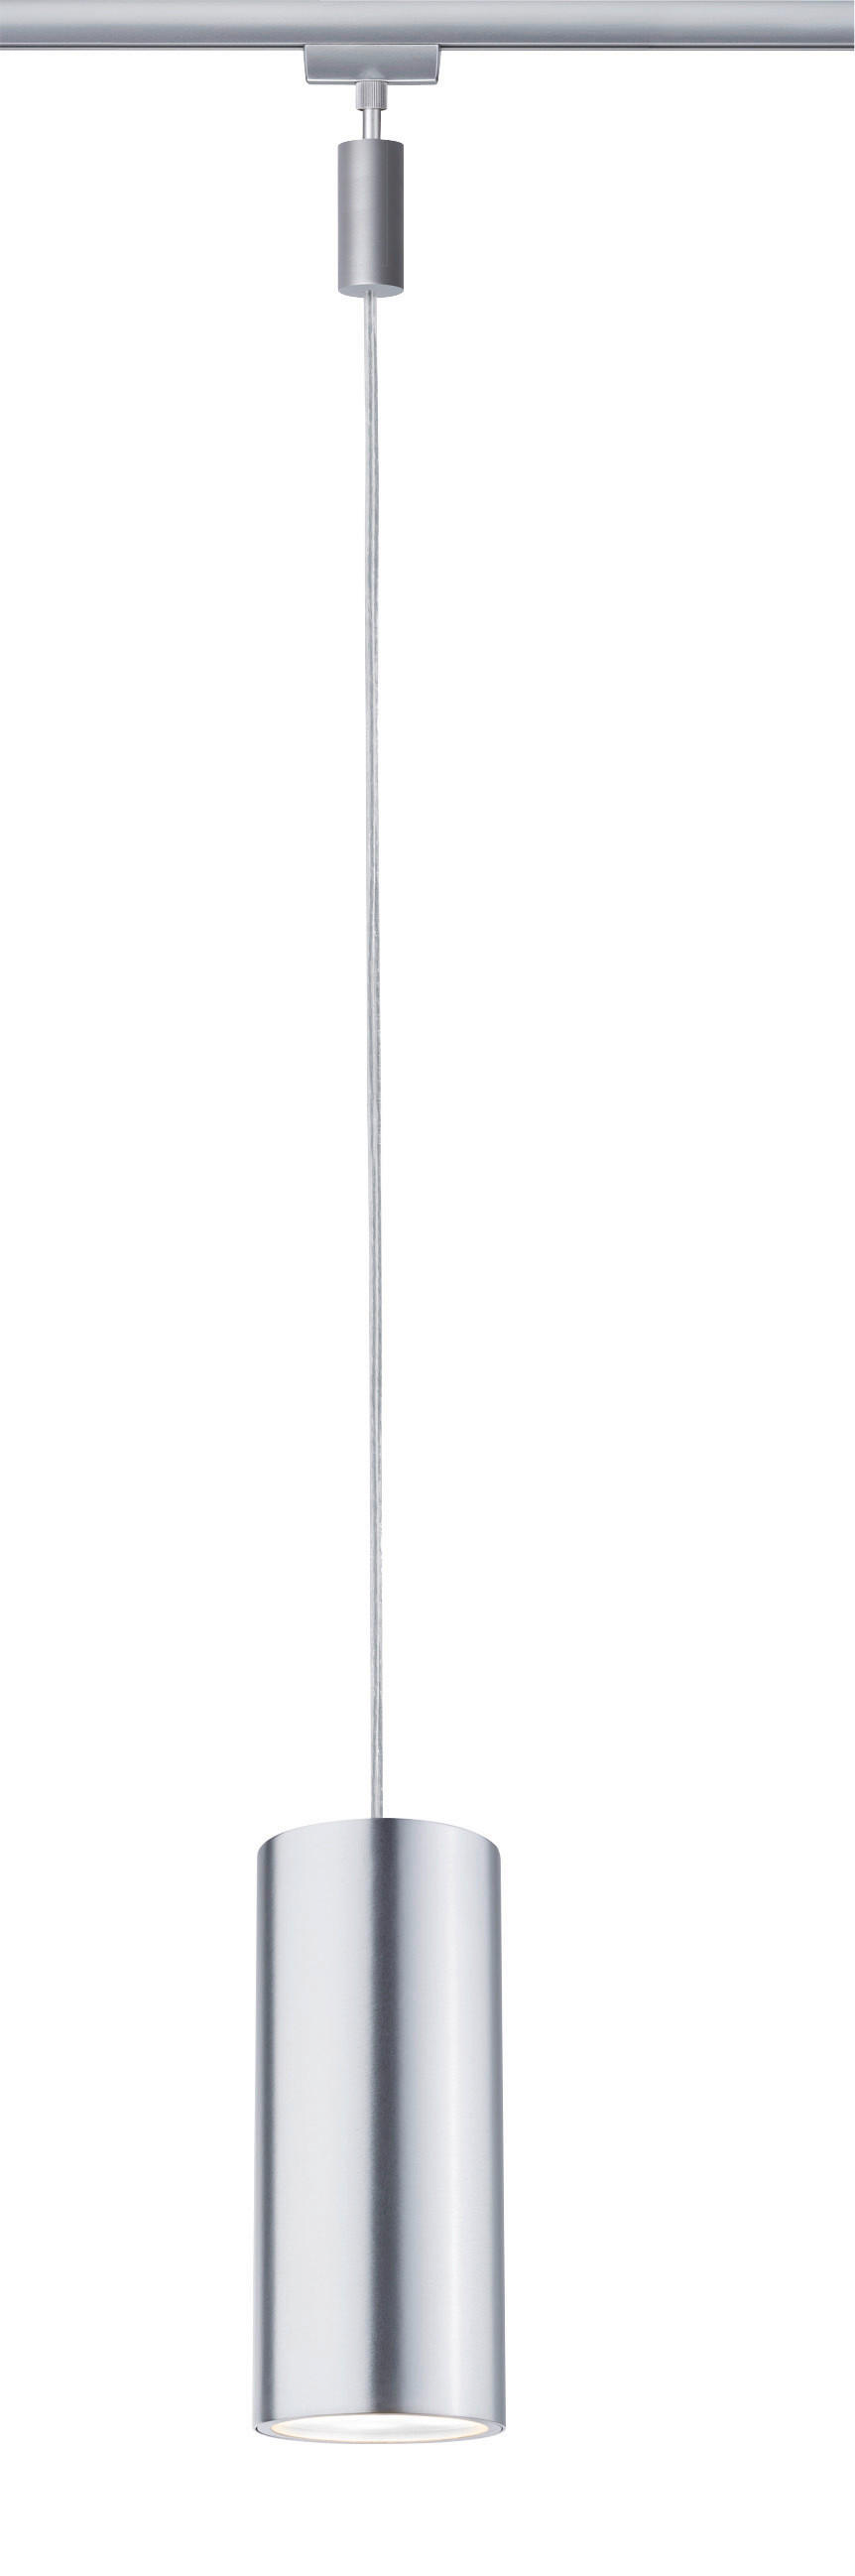 SCHIENENSYSTEM-HÄNGELEUCHTE URail 8,5/135 cm   - Chromfarben, Design, Metall (8,5/135cm) - Paulmann